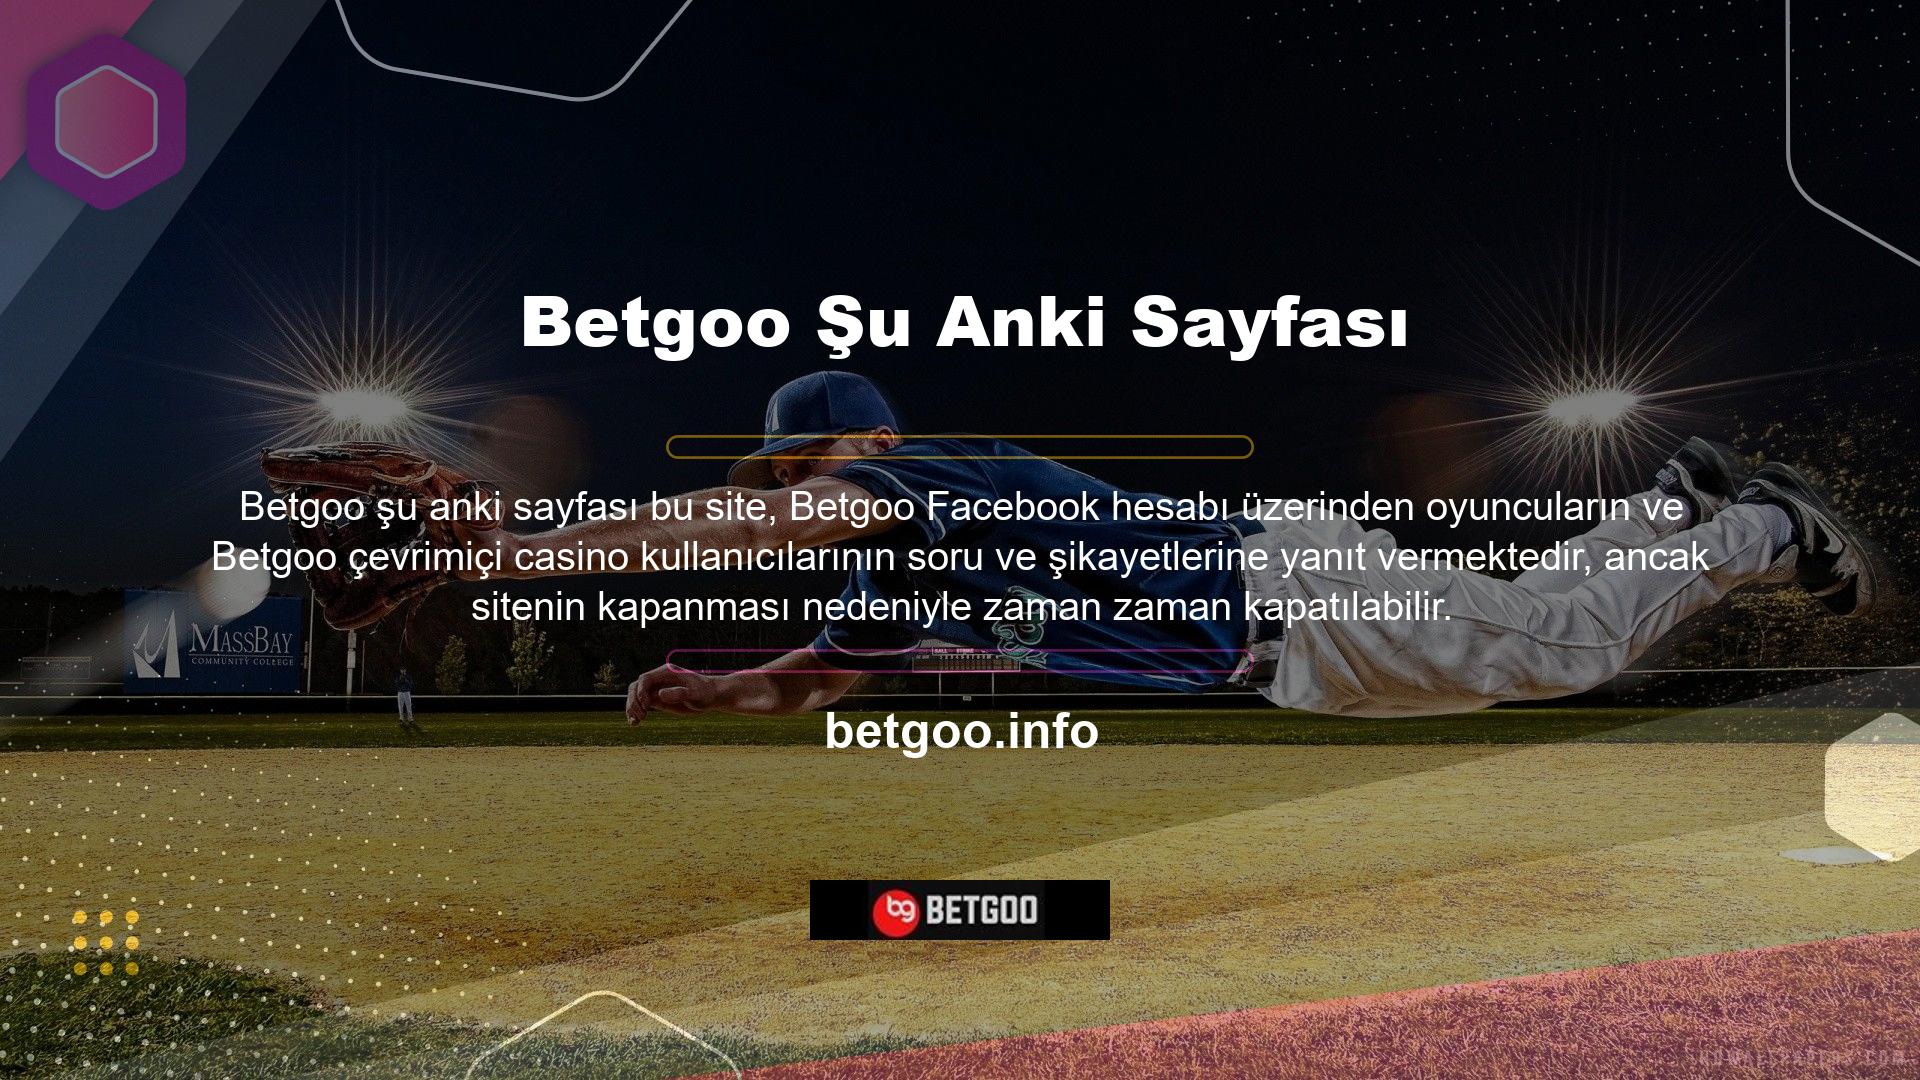 Ülkemizde faaliyet gösteren tüm oyun sitelerinde olduğu gibi Betgoo online oyun sitelerinde de zaman zaman tıkanmalar ve kapanmalar yaşanmaktadır